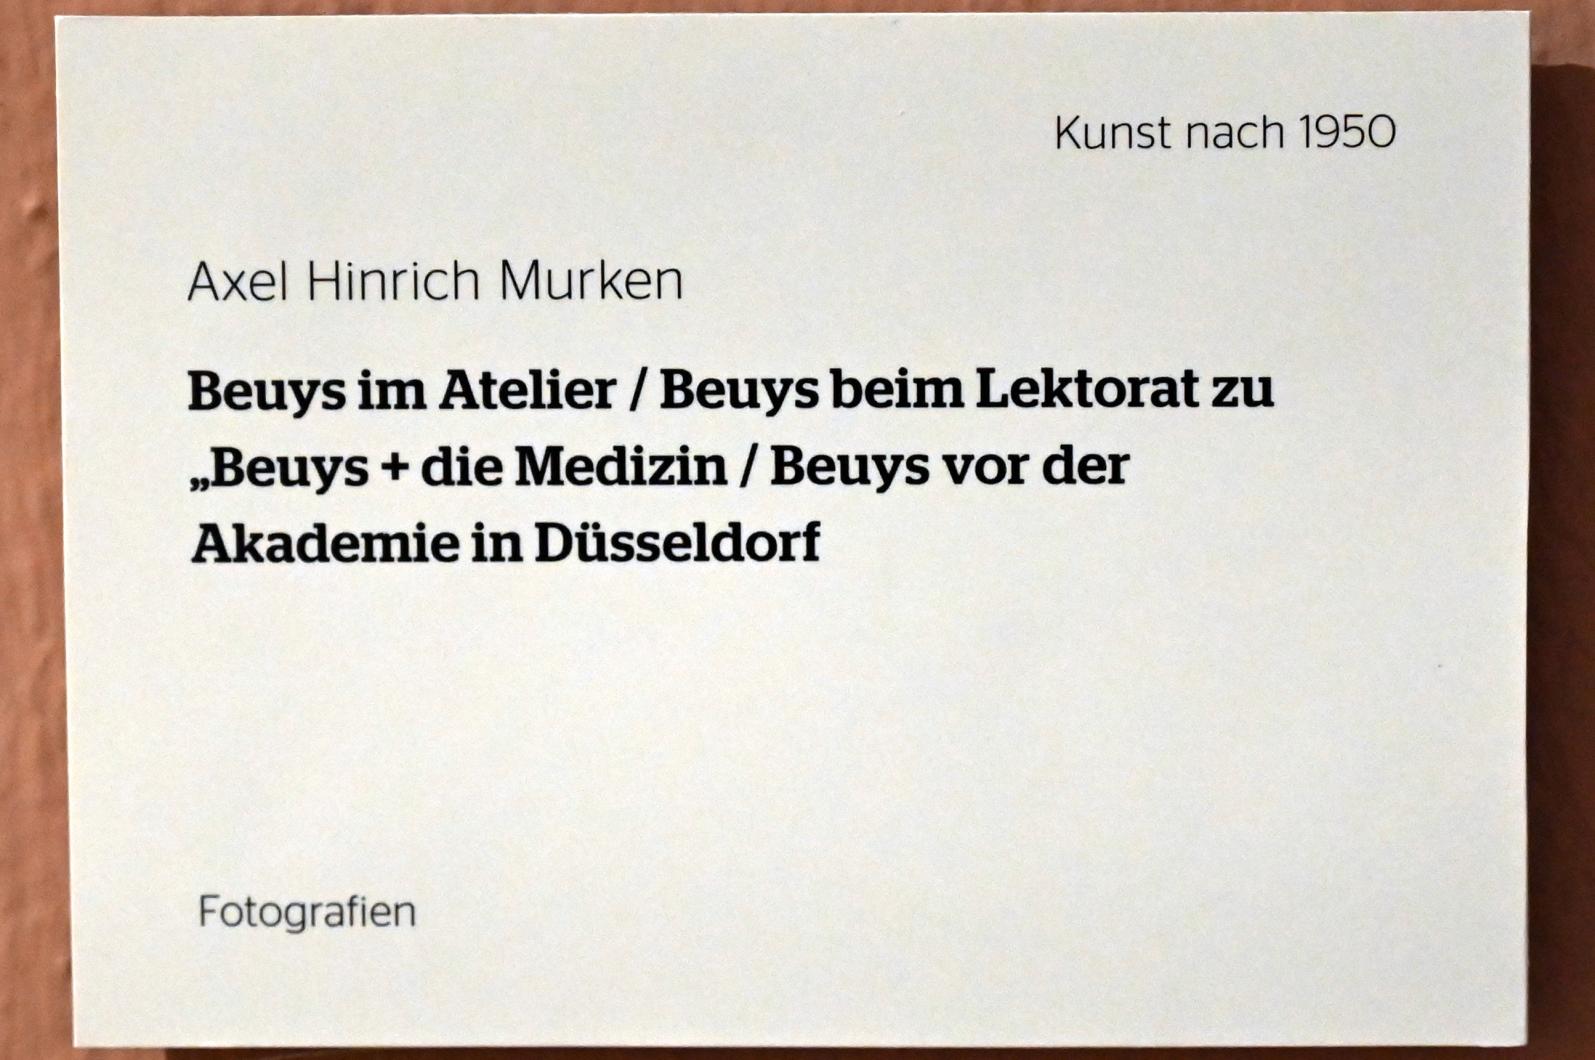 Axel Hinrich Murken (Undatiert), Beuys im Atelier / Beuys beim Lektorat zu "Beuys + die Medizin" / Beuys vor der Akademie in Düsseldorf, Wiesbaden, Museum Wiesbaden, Beuys 2, Undatiert, Bild 8/8